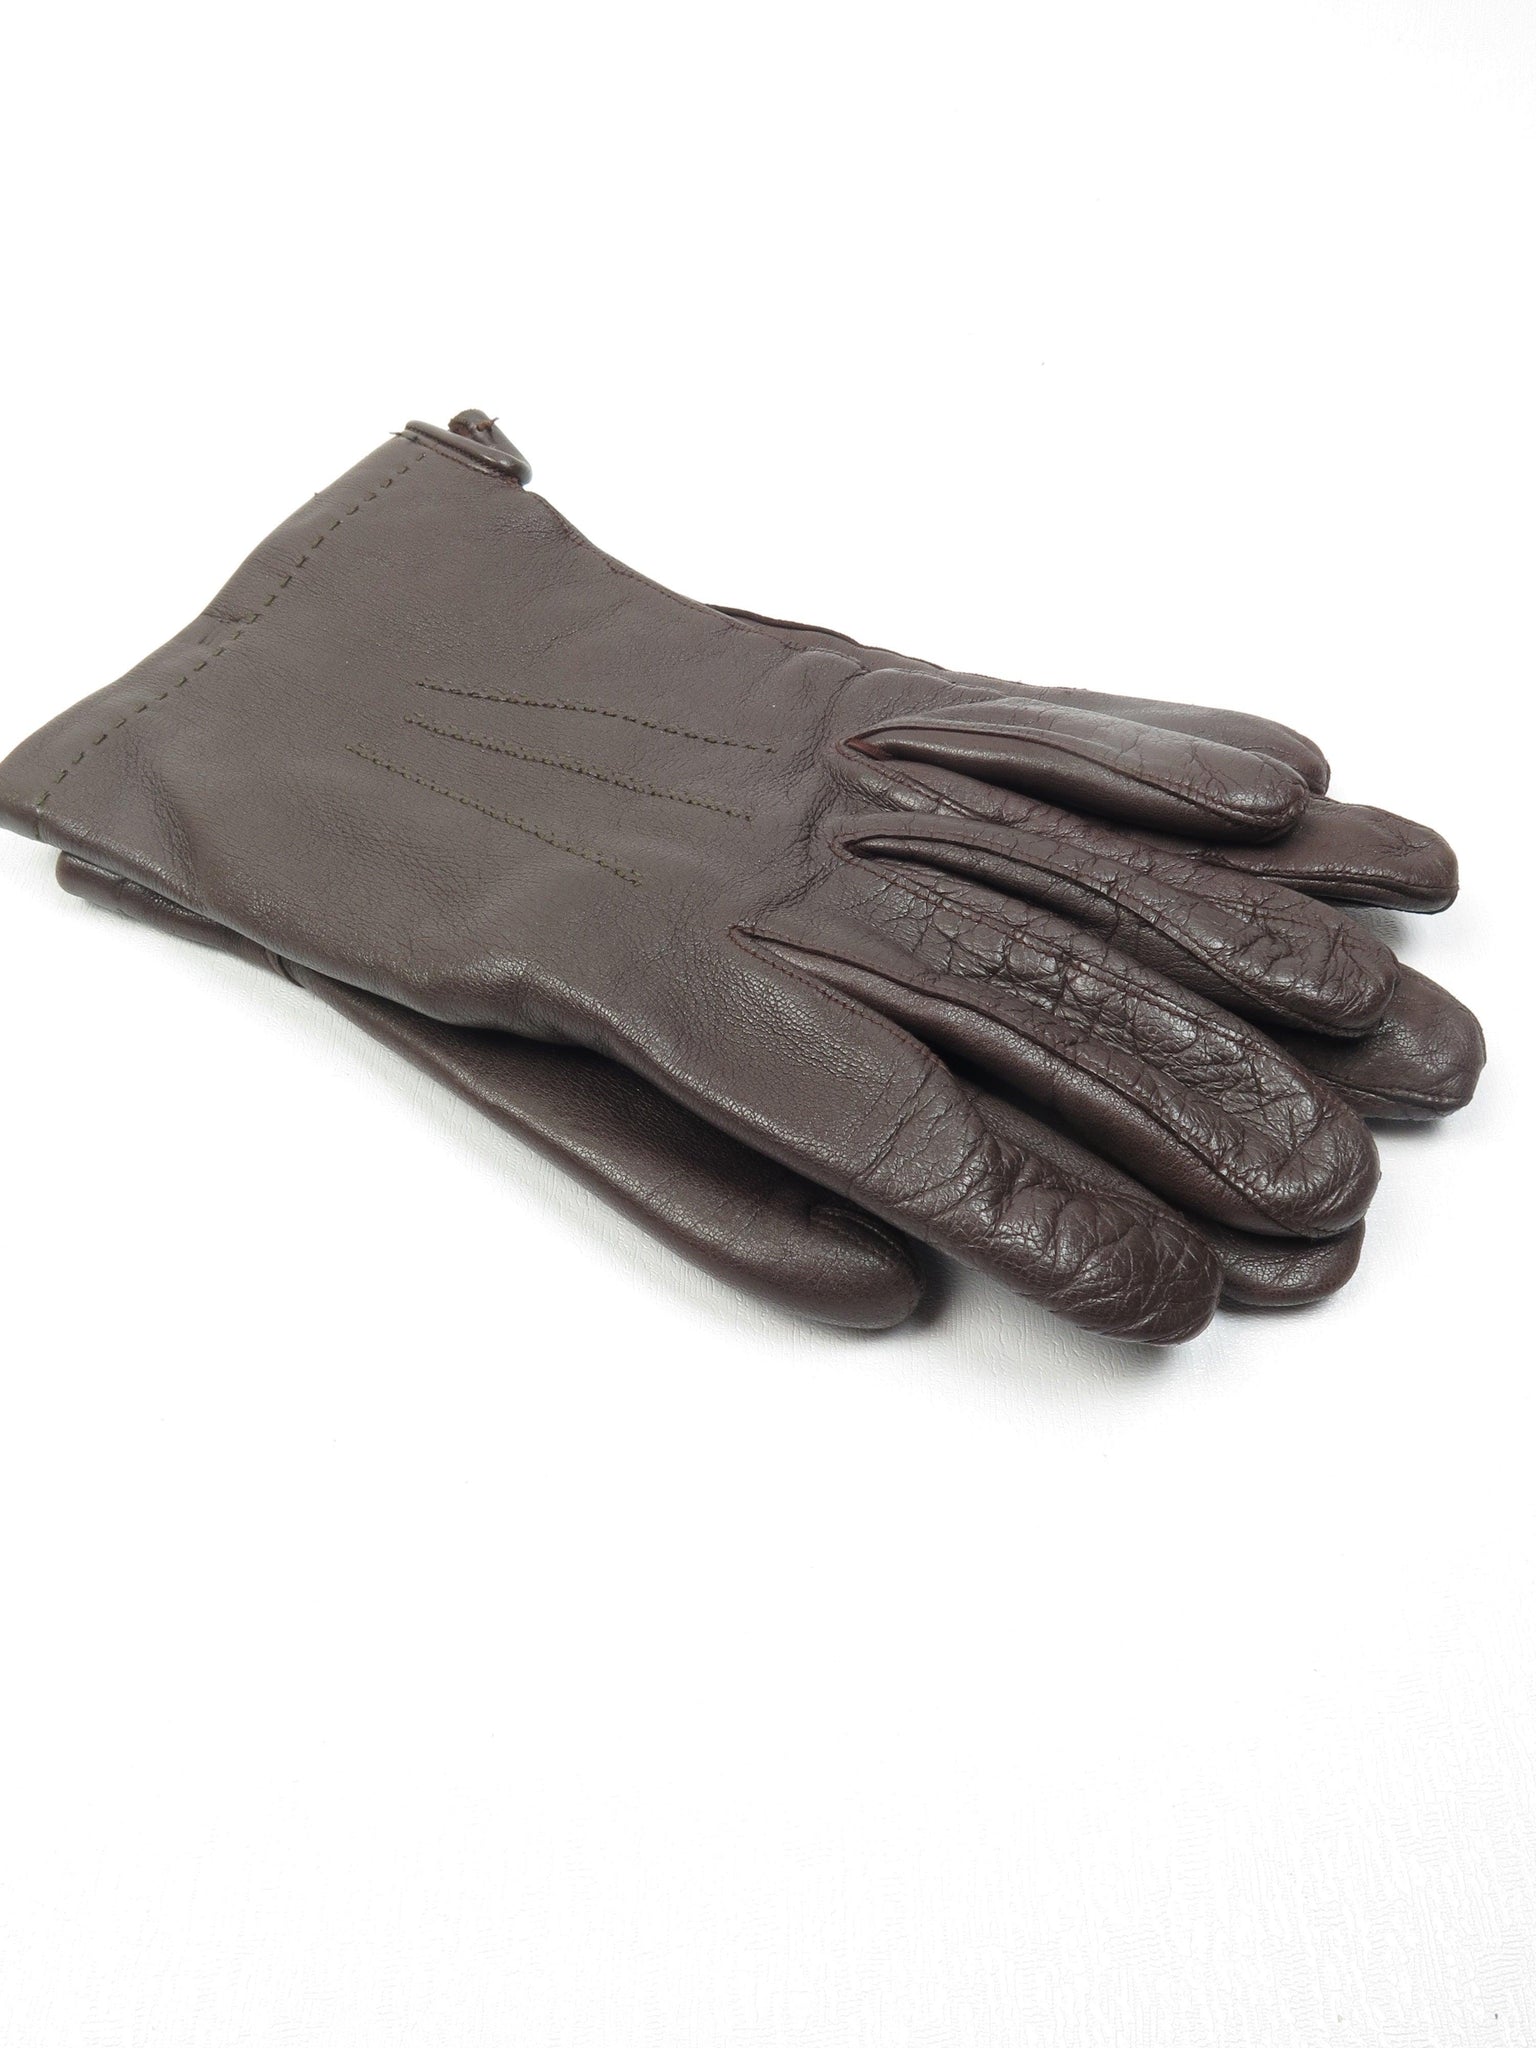 Men’s Vintage Brown Leather Gloves *8 3/4* - The Harlequin